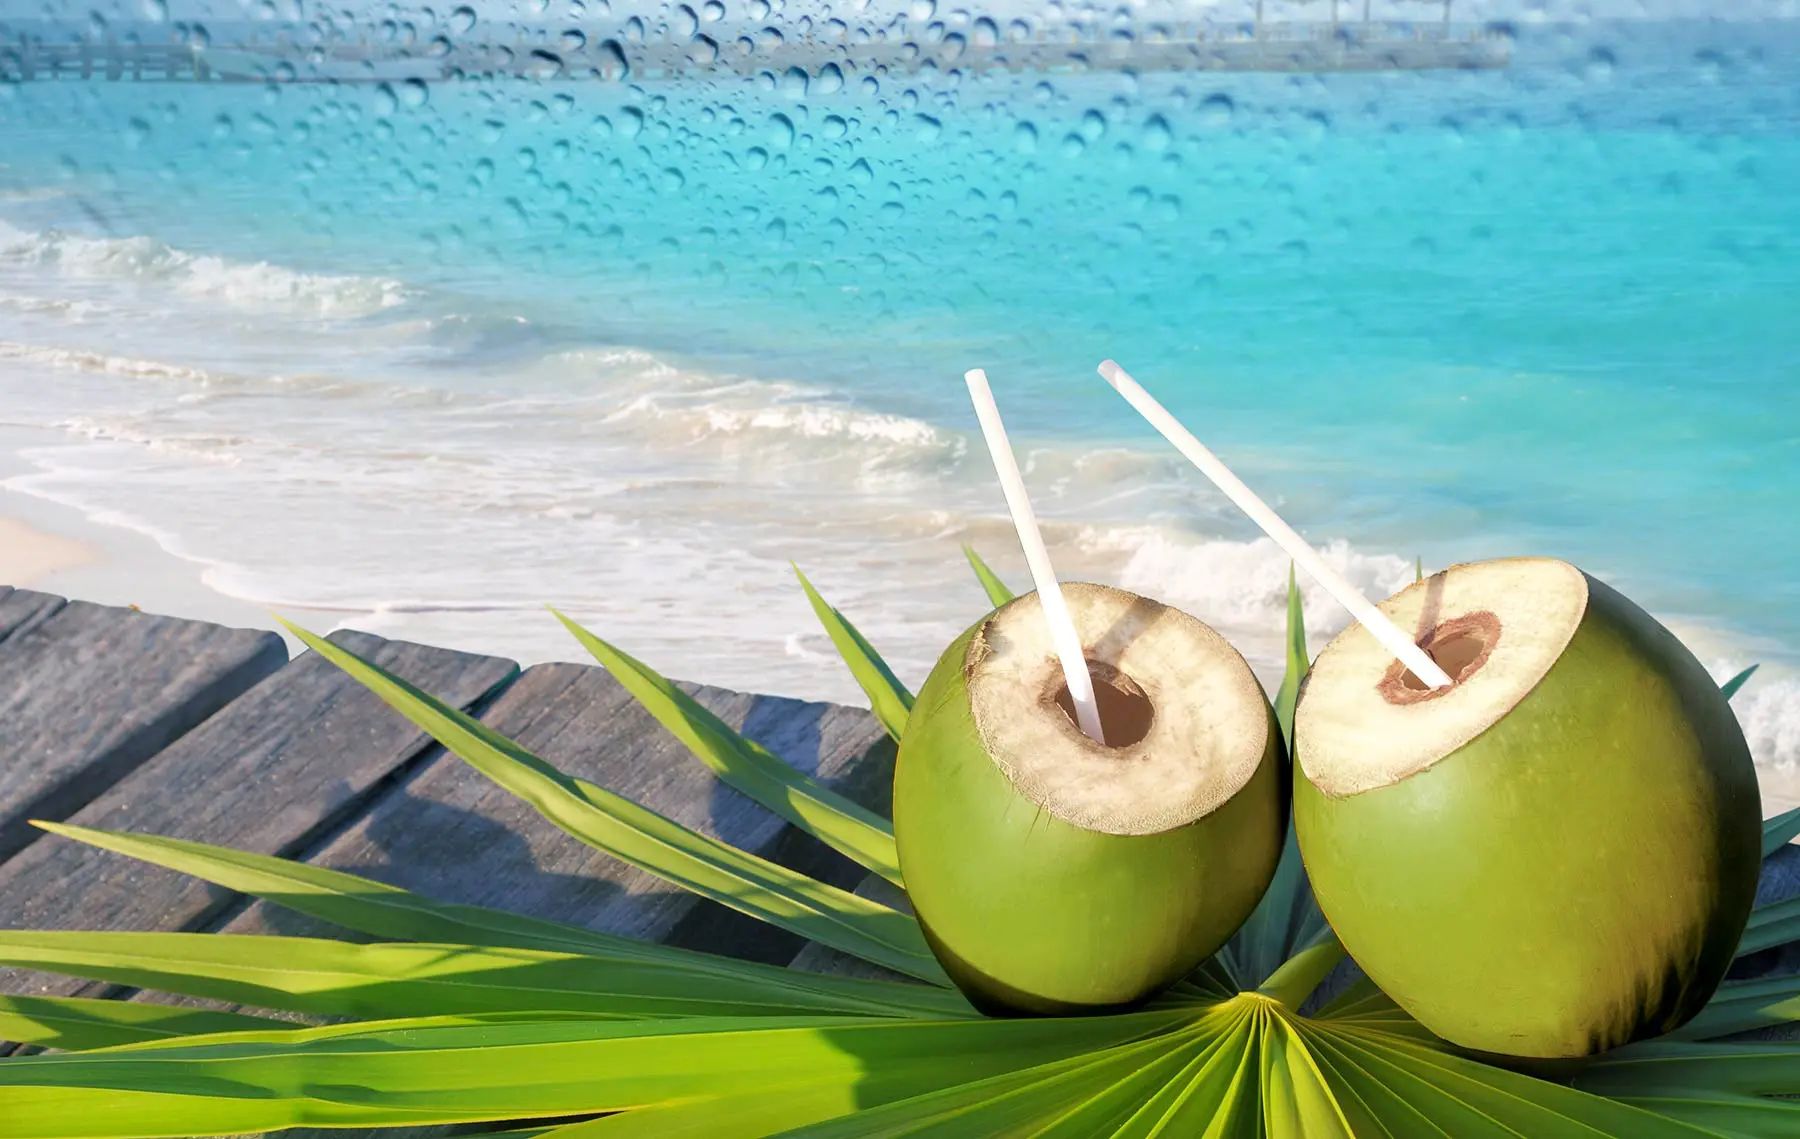 Selain air putih, air kelapa muda juga sangat baik untuk kesehatanmu. Karena mengandung anti oksidan yang sangat tinggi | via: purecoco.sk